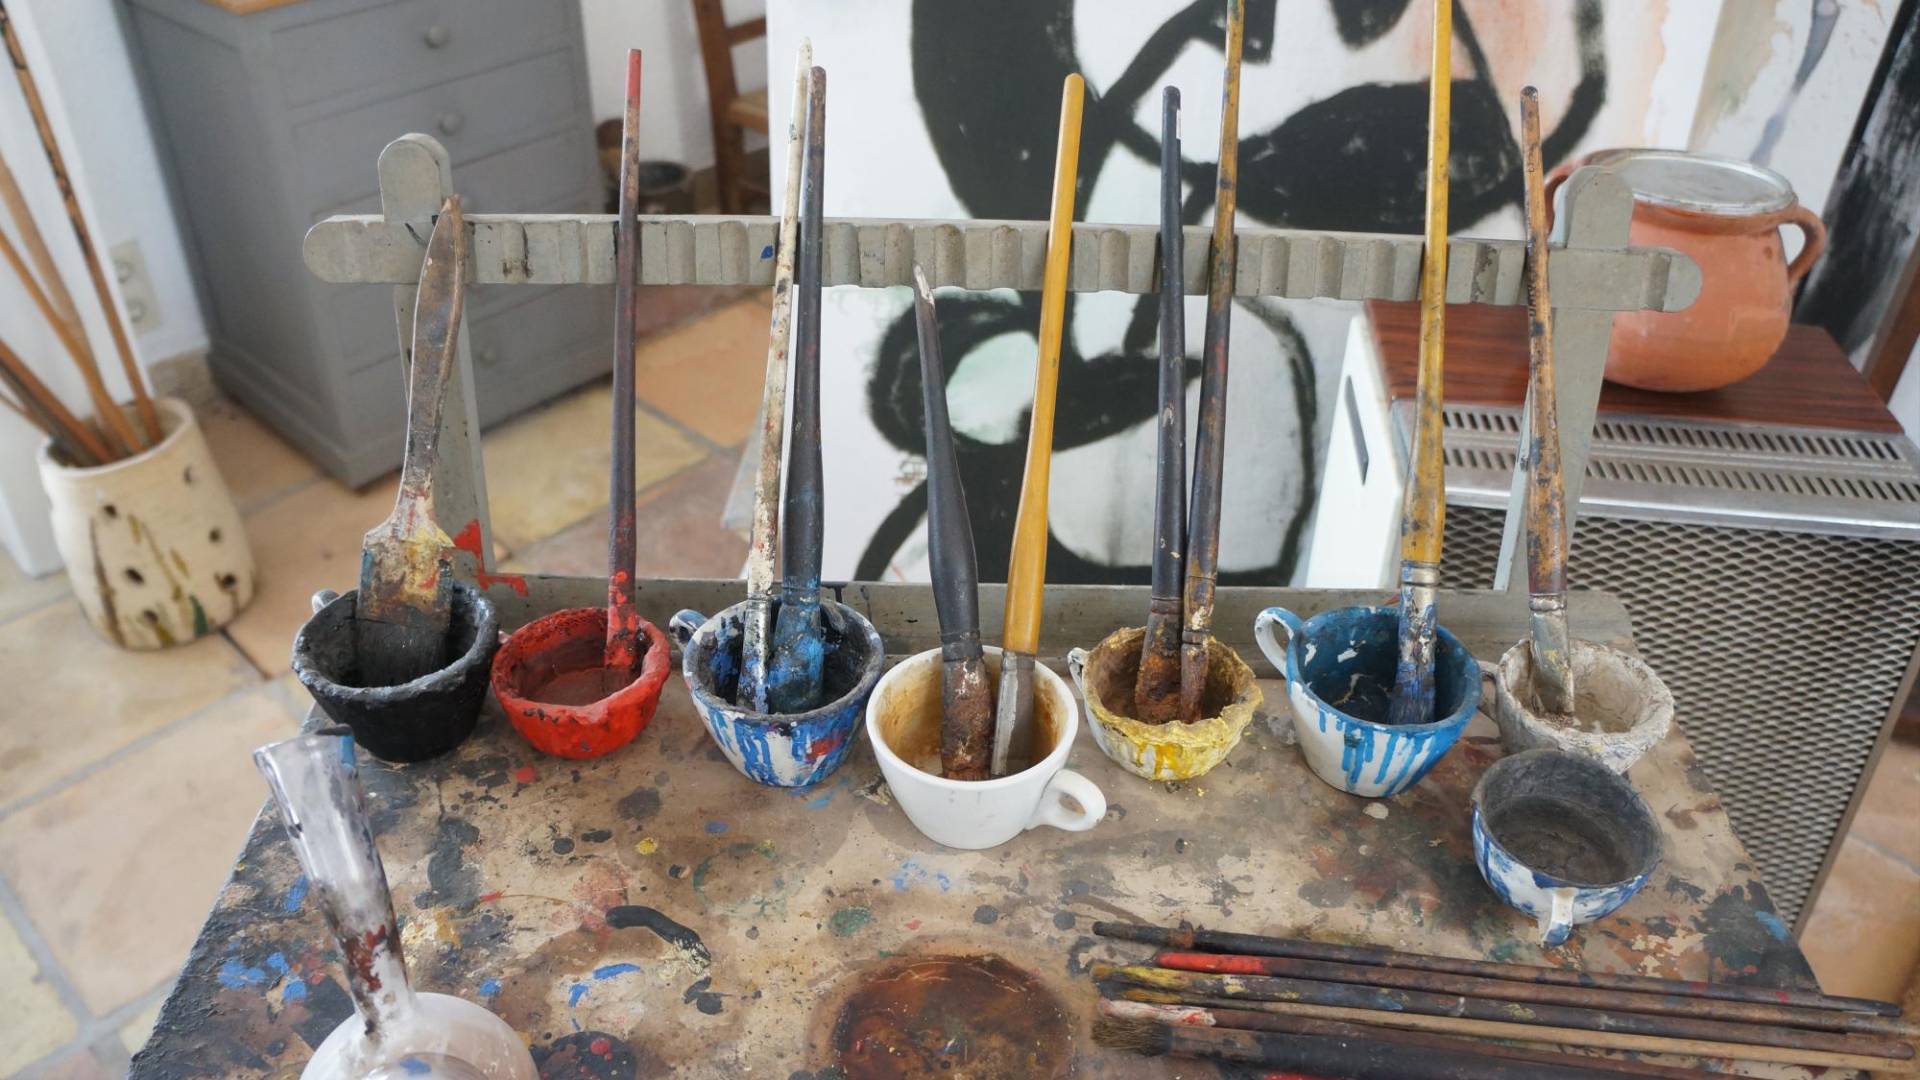 $!Joan Miró describió la pintura amarilla cadmio como “espléndida”. Vasos para mezclar pintura en su estudio.